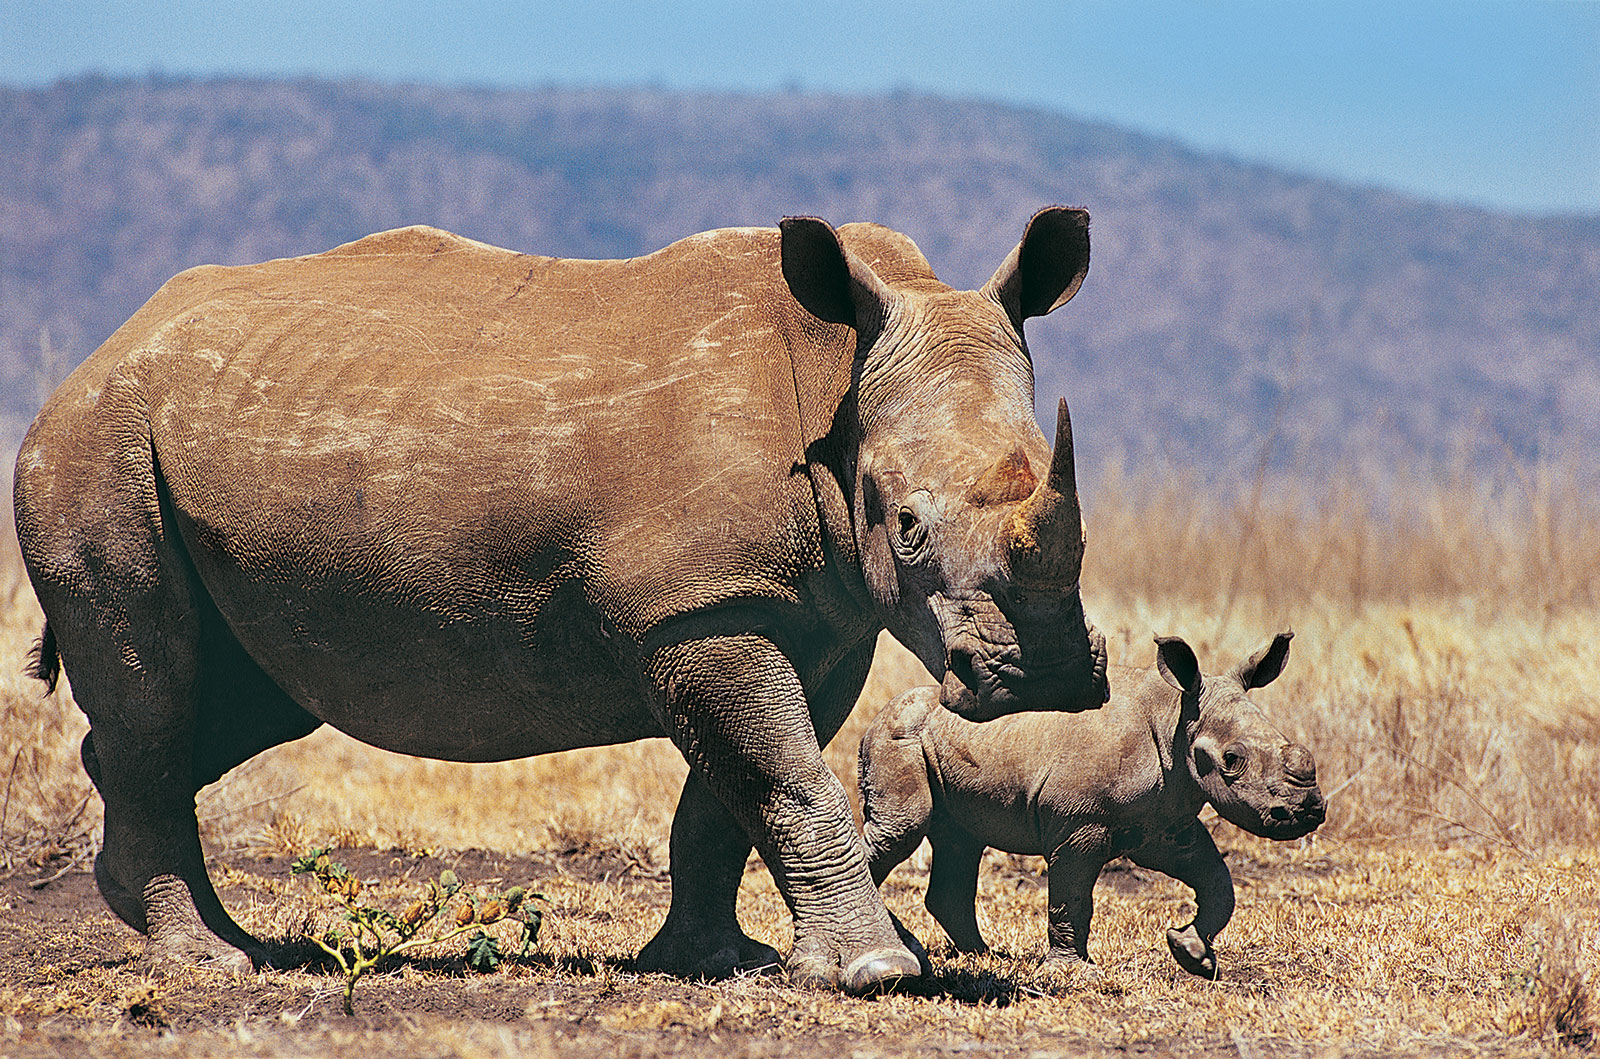 javan rhinoceros range